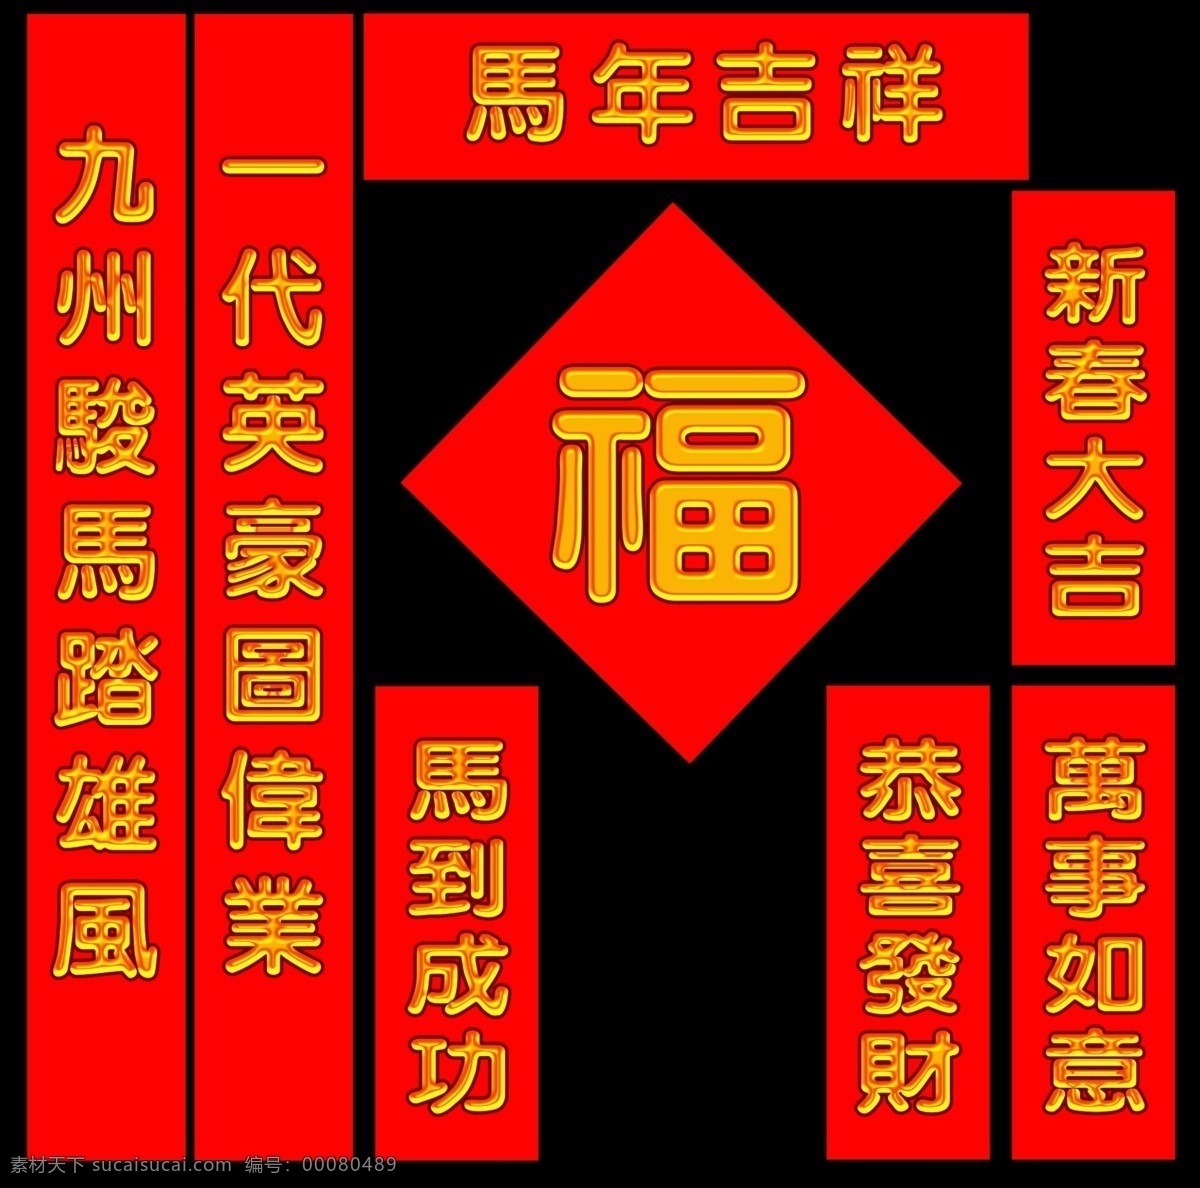 马年 春联 素材图片 2014 春节 对联 红色背景 金色字体 年 字体创意 节日创意素材 节日素材 2015羊年